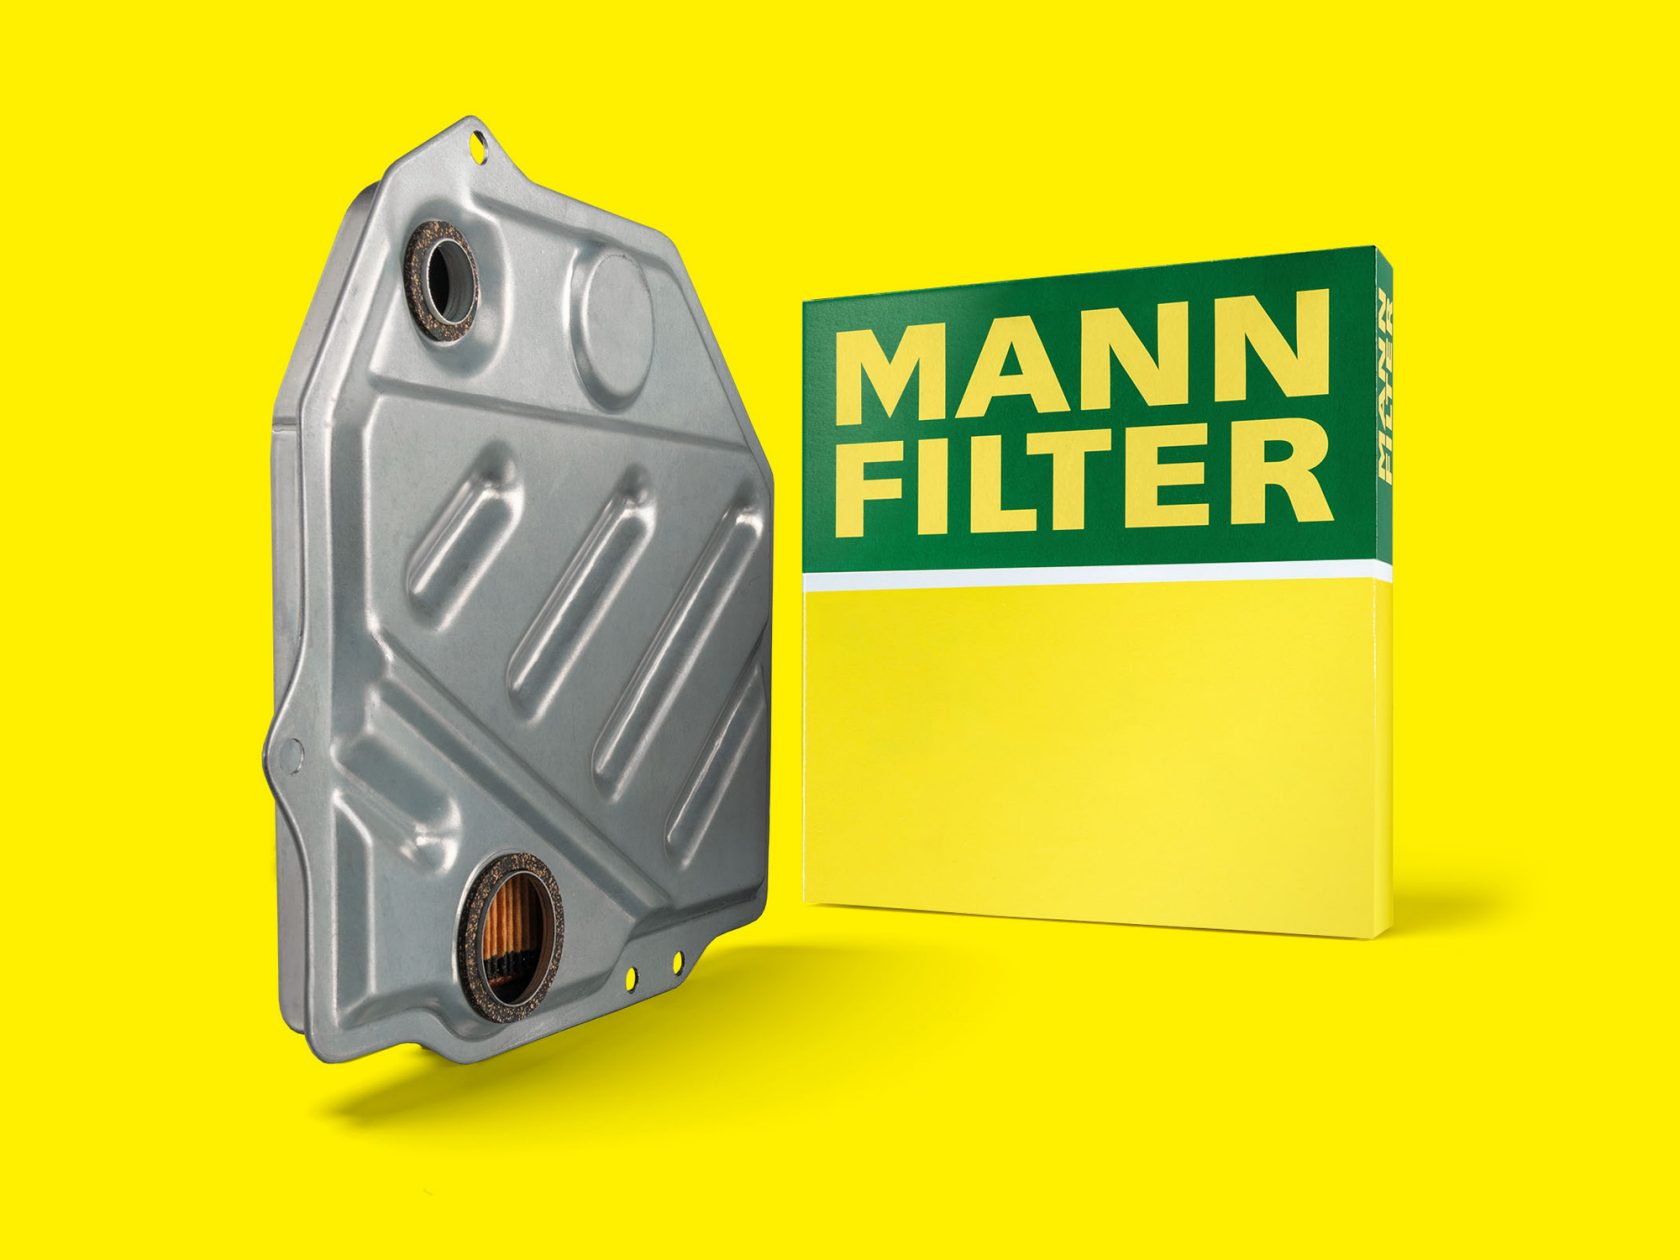 MANN-FILTER Getriebeölfiltern schützen die empfindlichen Getriebekomponenten vor Verschleiß